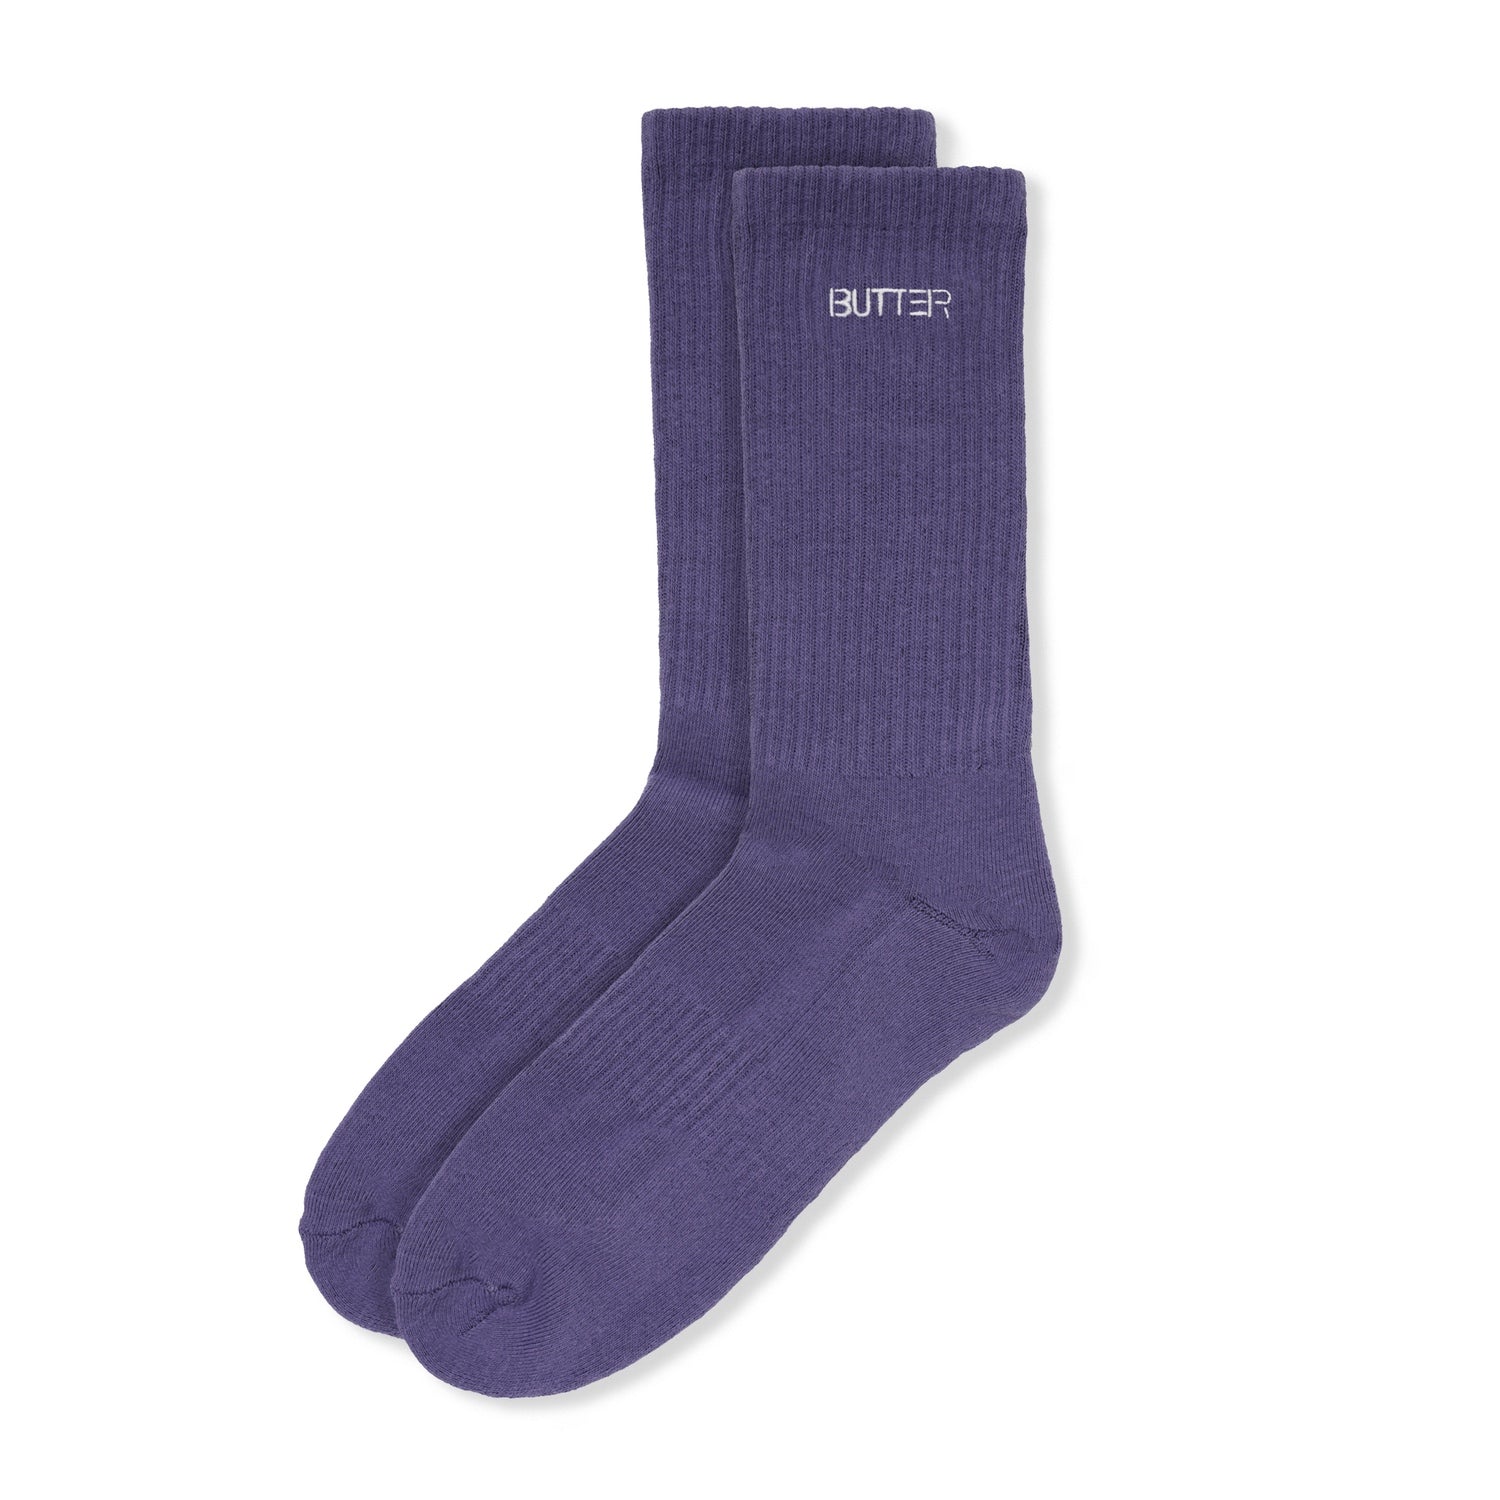 Equipt Socks, Dusk Purple